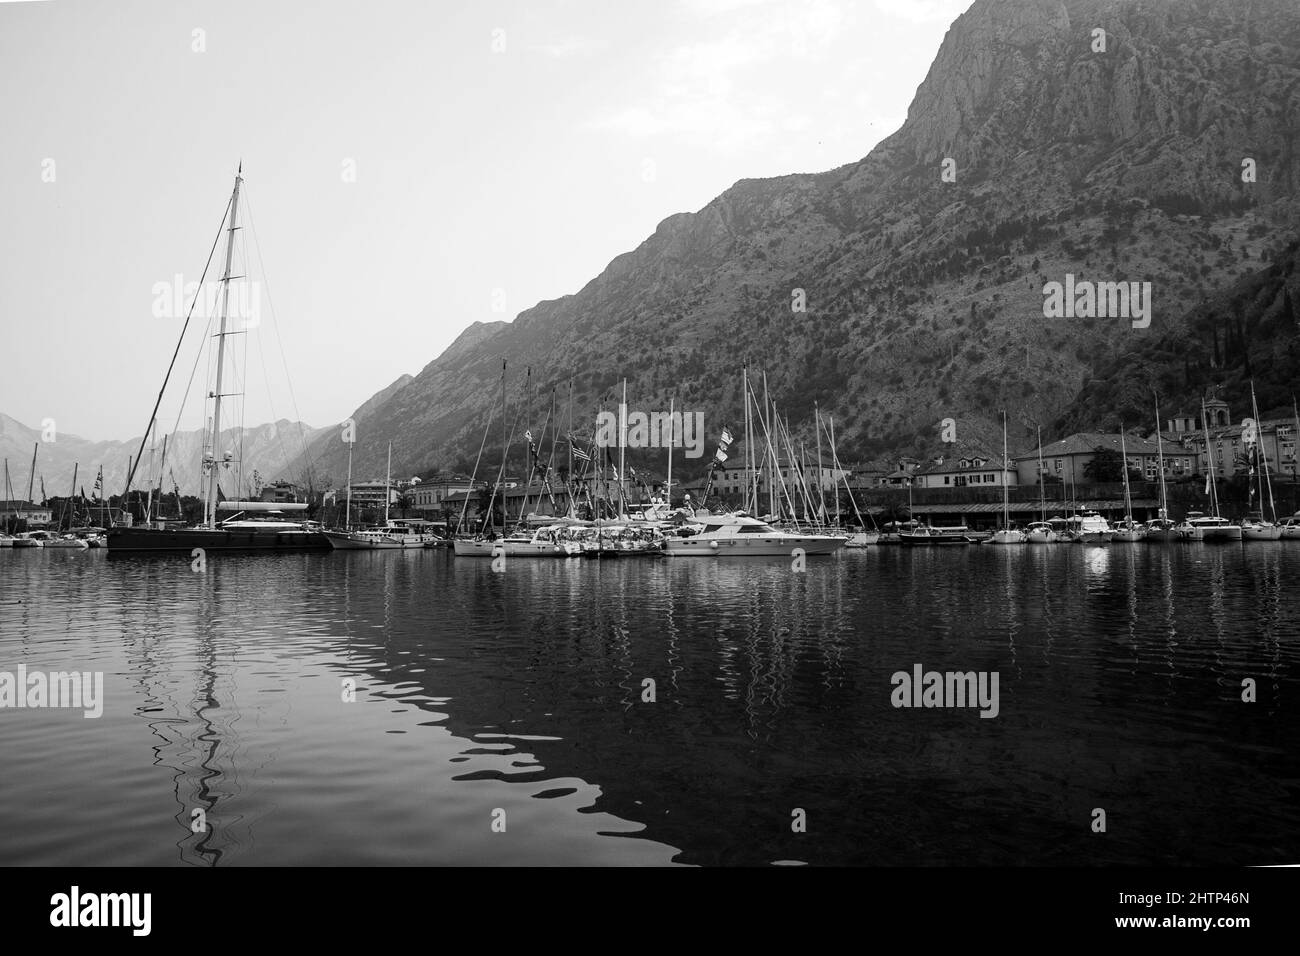 Photo en niveaux de gris du Kotor, une ville côtière du Monténégro Banque D'Images